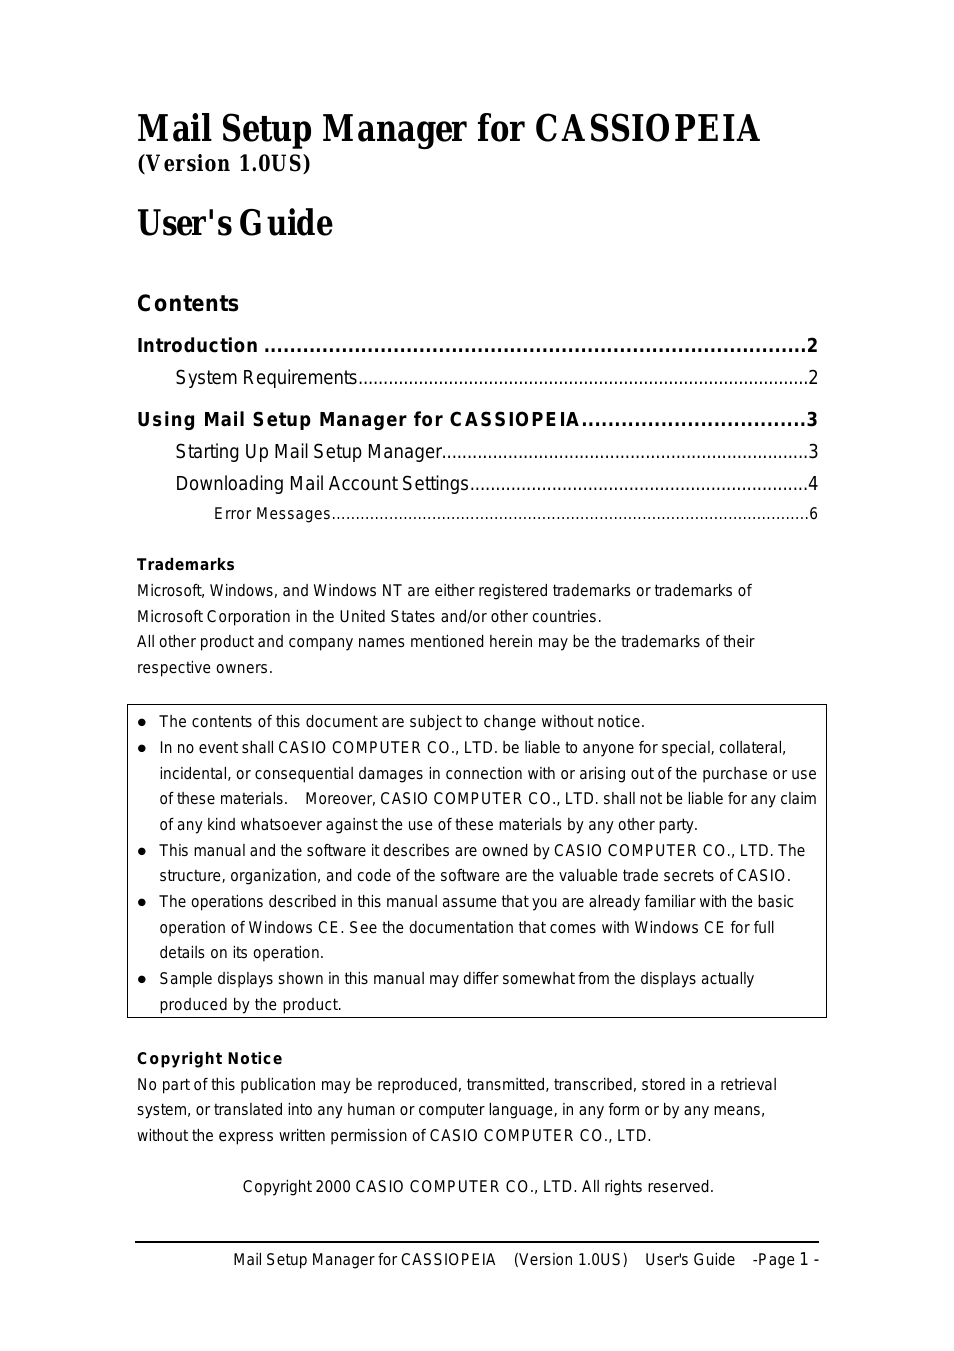 EM-500 Mail Setup Manager for CASSIOPEIA V.1.0